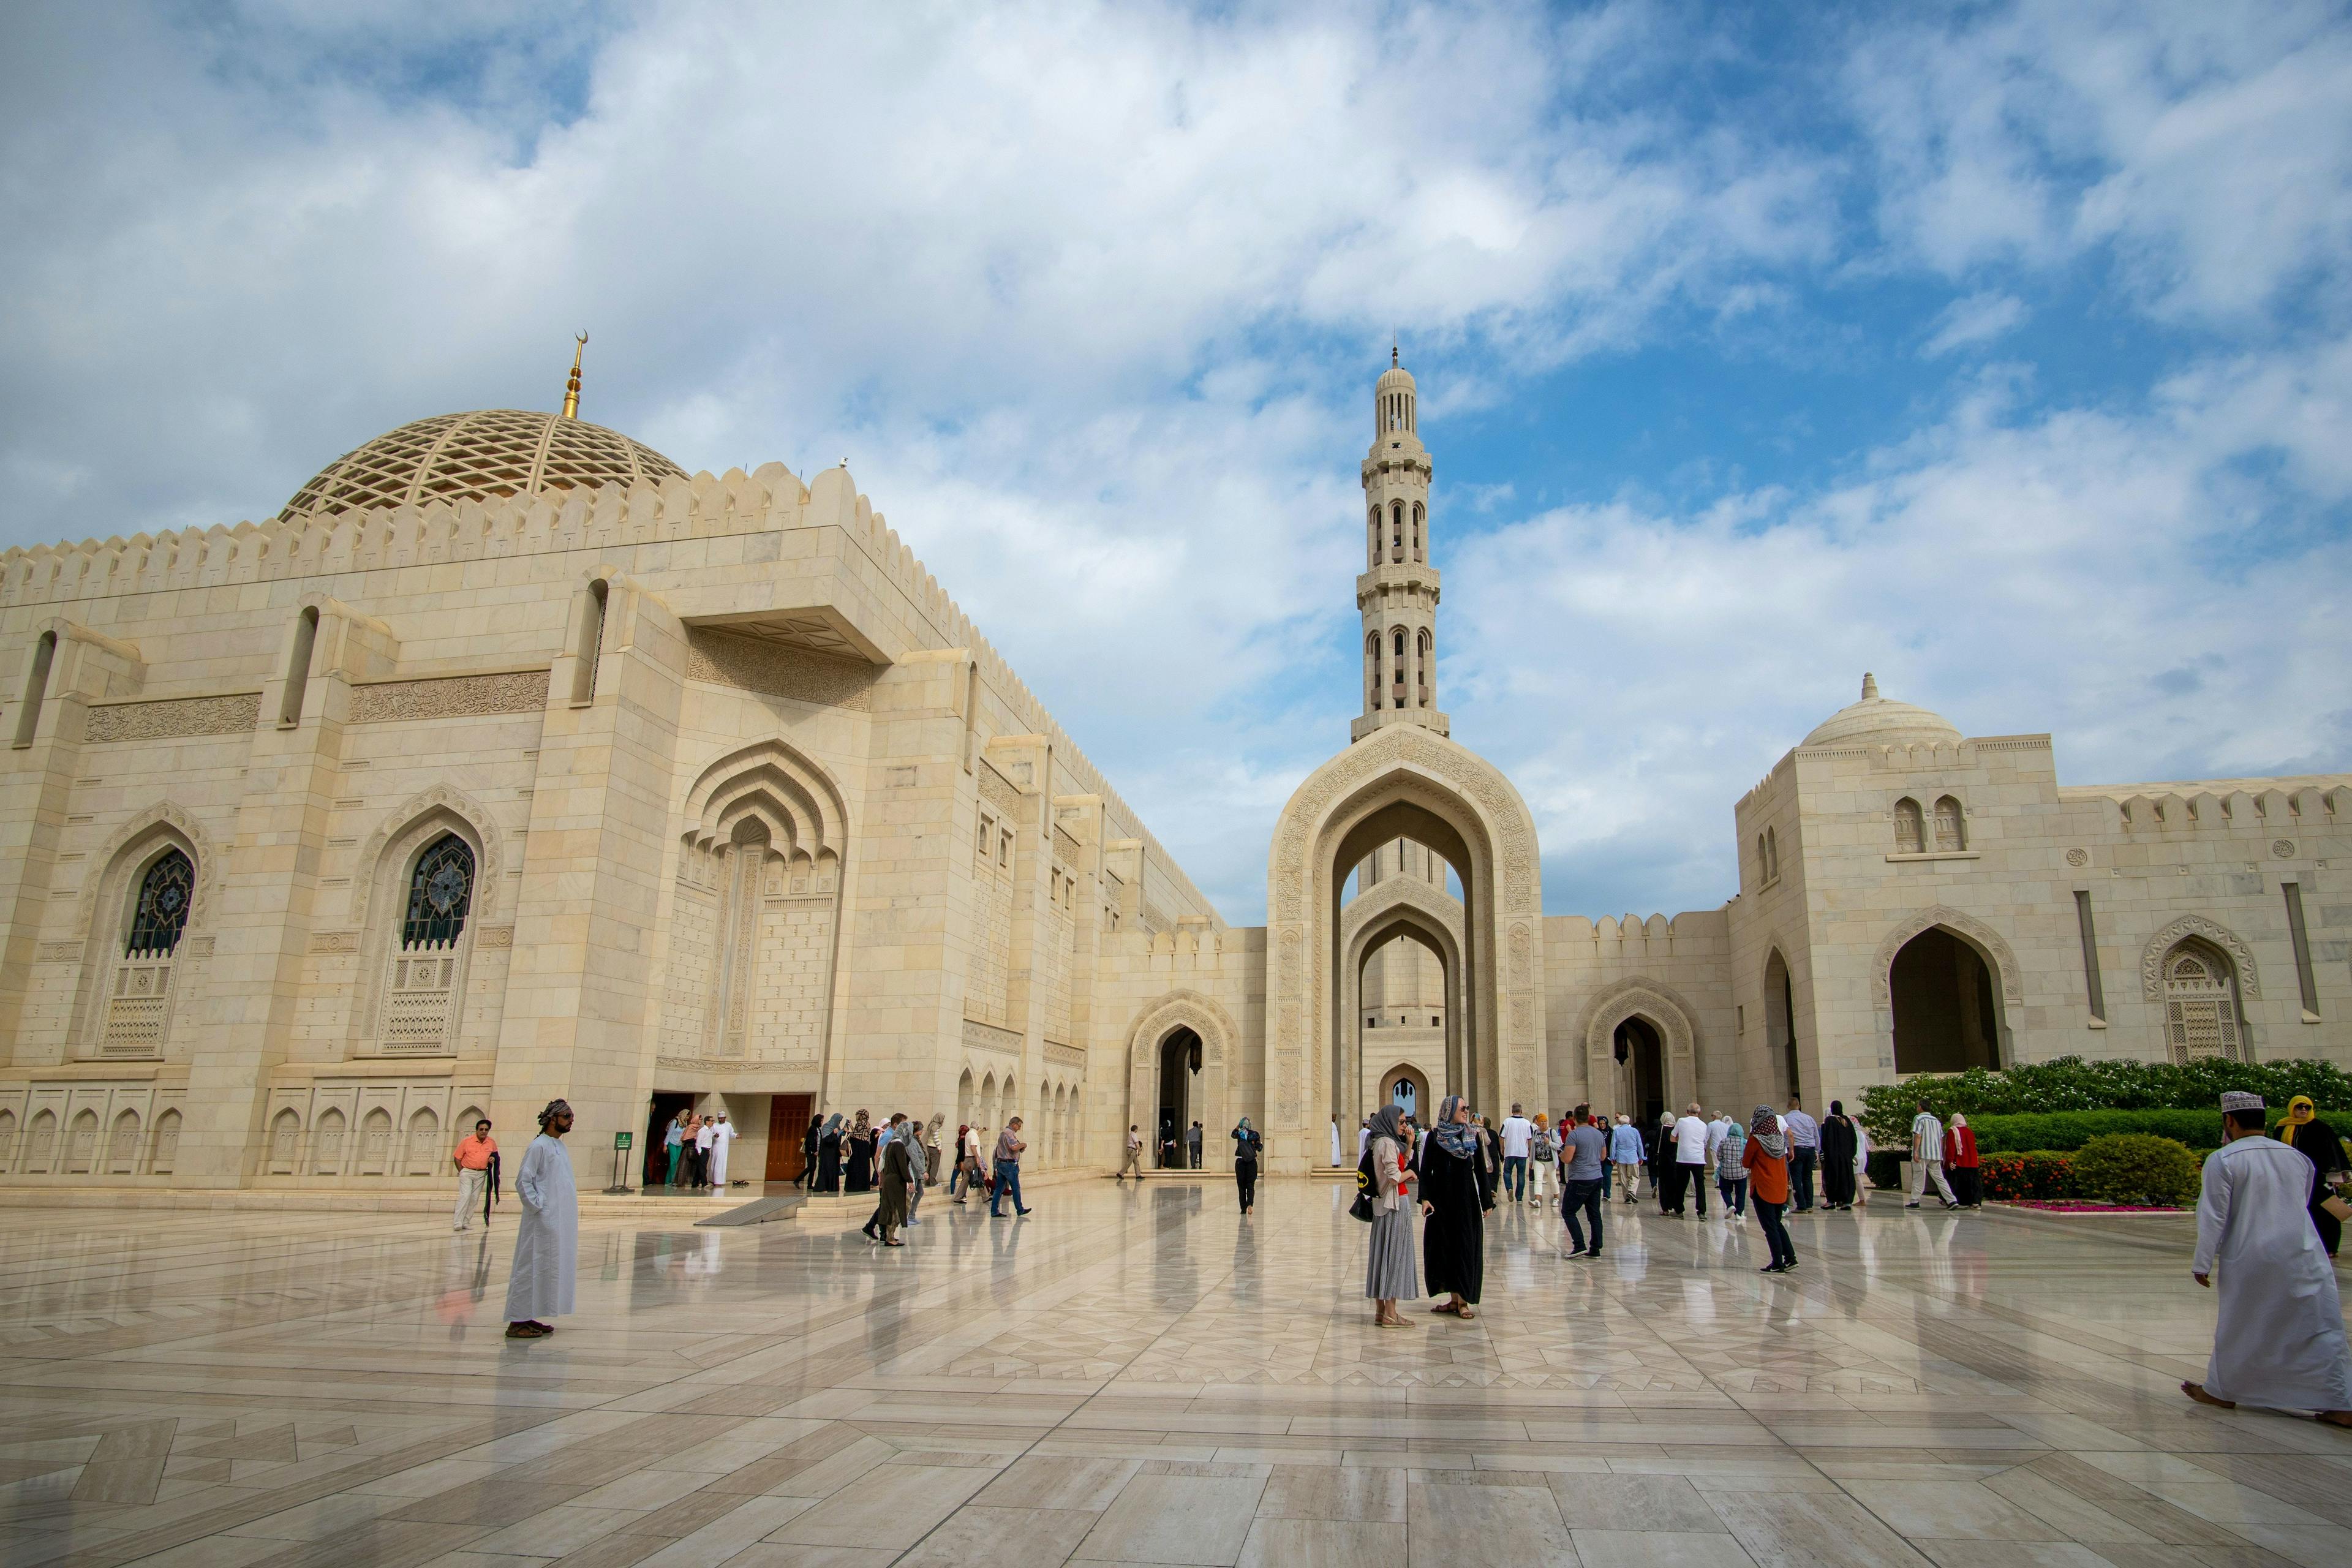 Sultan Qaboos Grand Mosque in Oman.